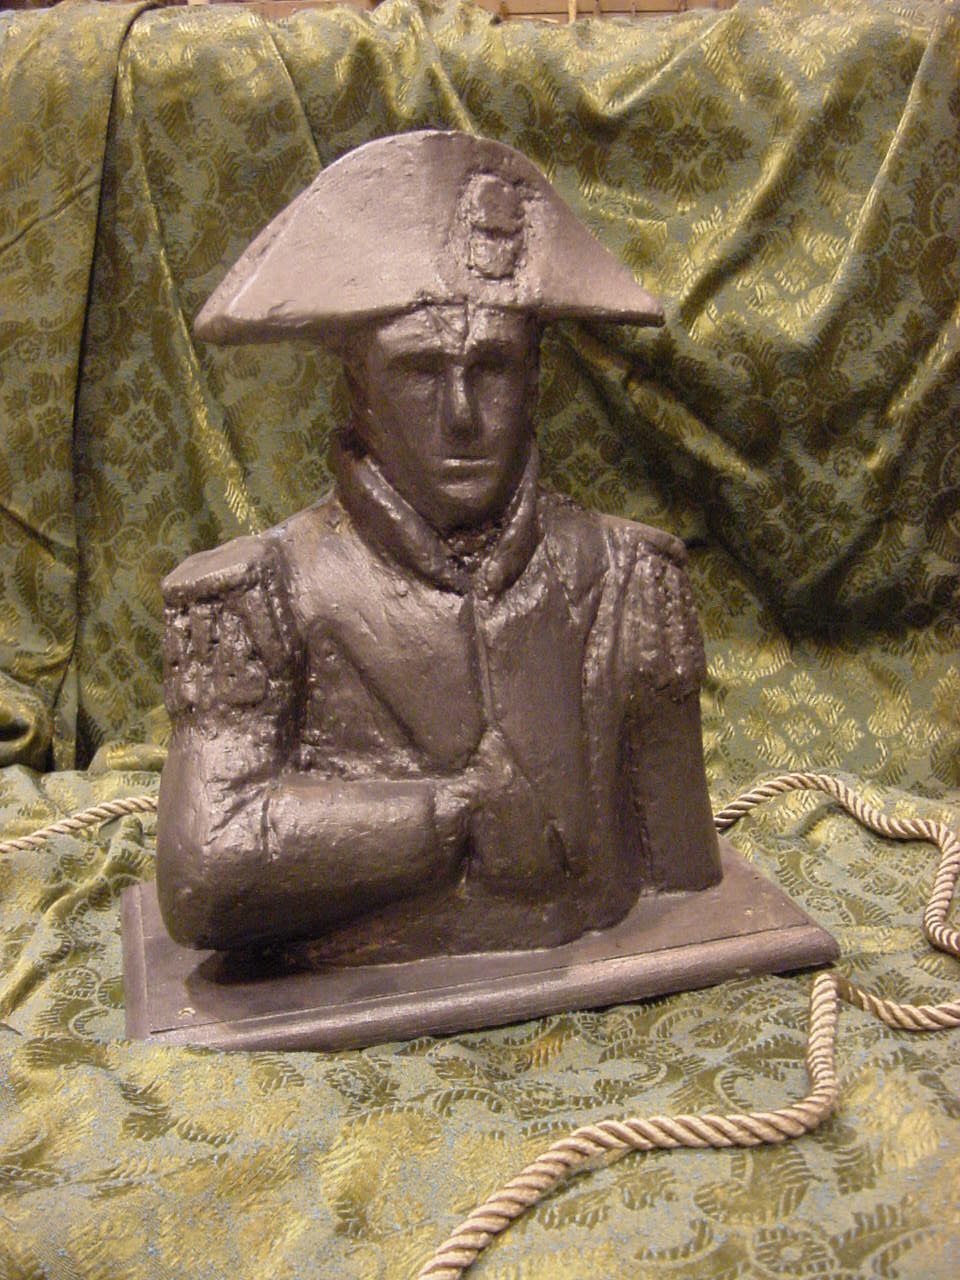 Napoleon sculpture in 3 hours!